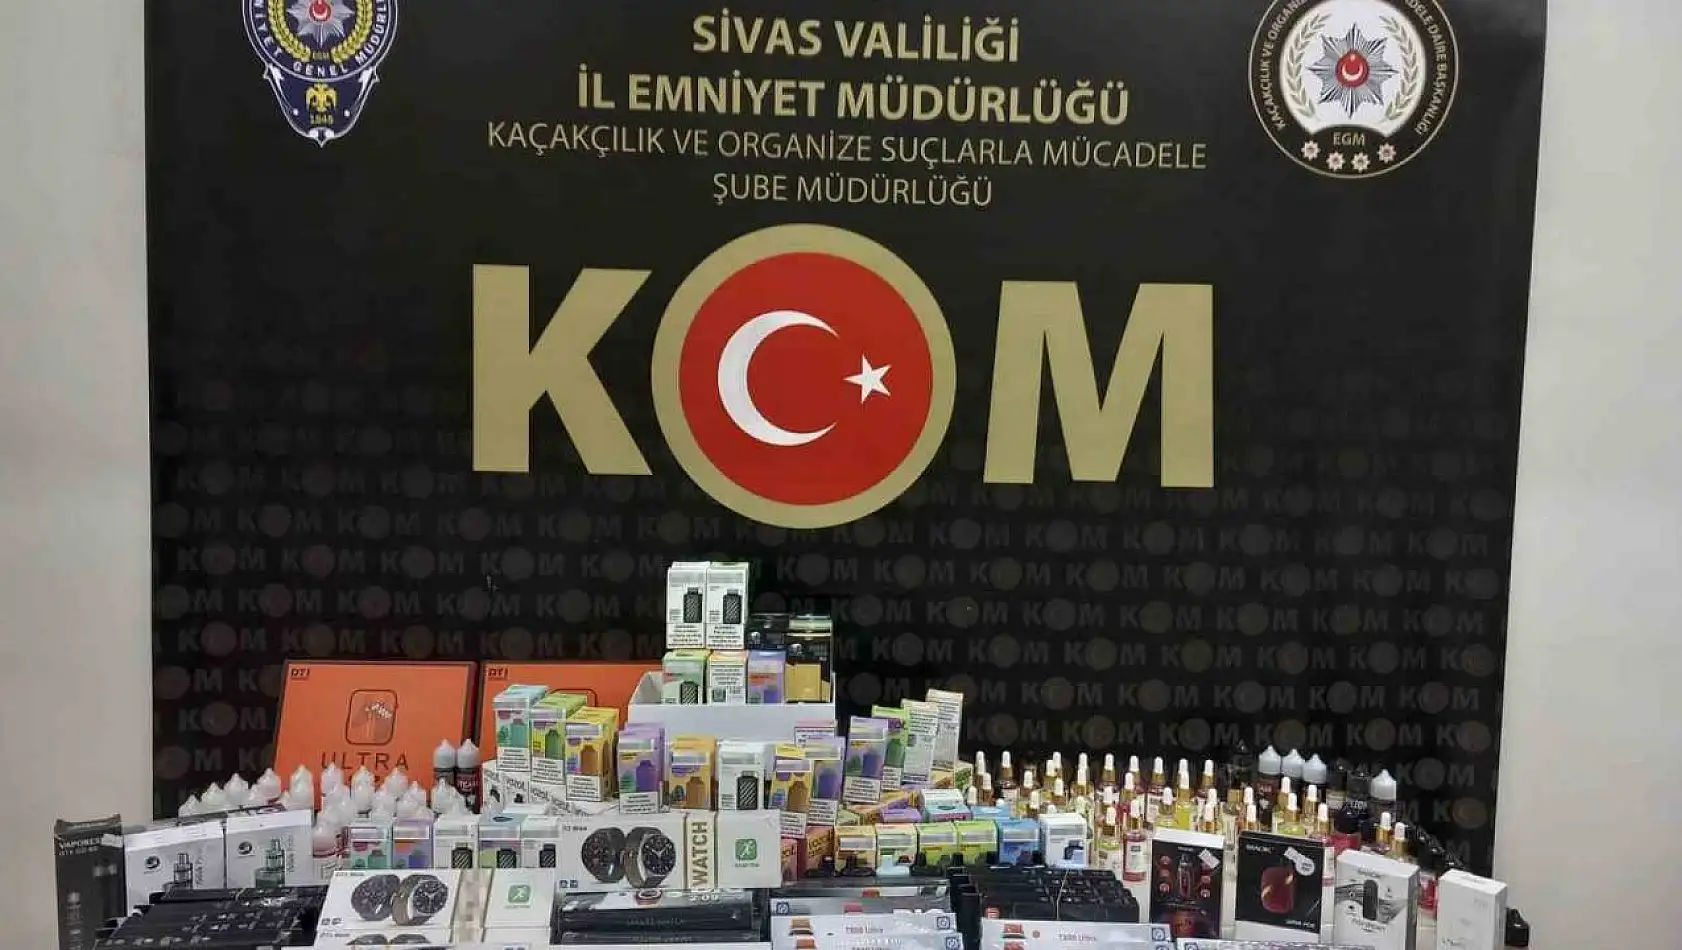 Sivas'ta kaçak elektronik sigara ve dijital saat ele geçirildi